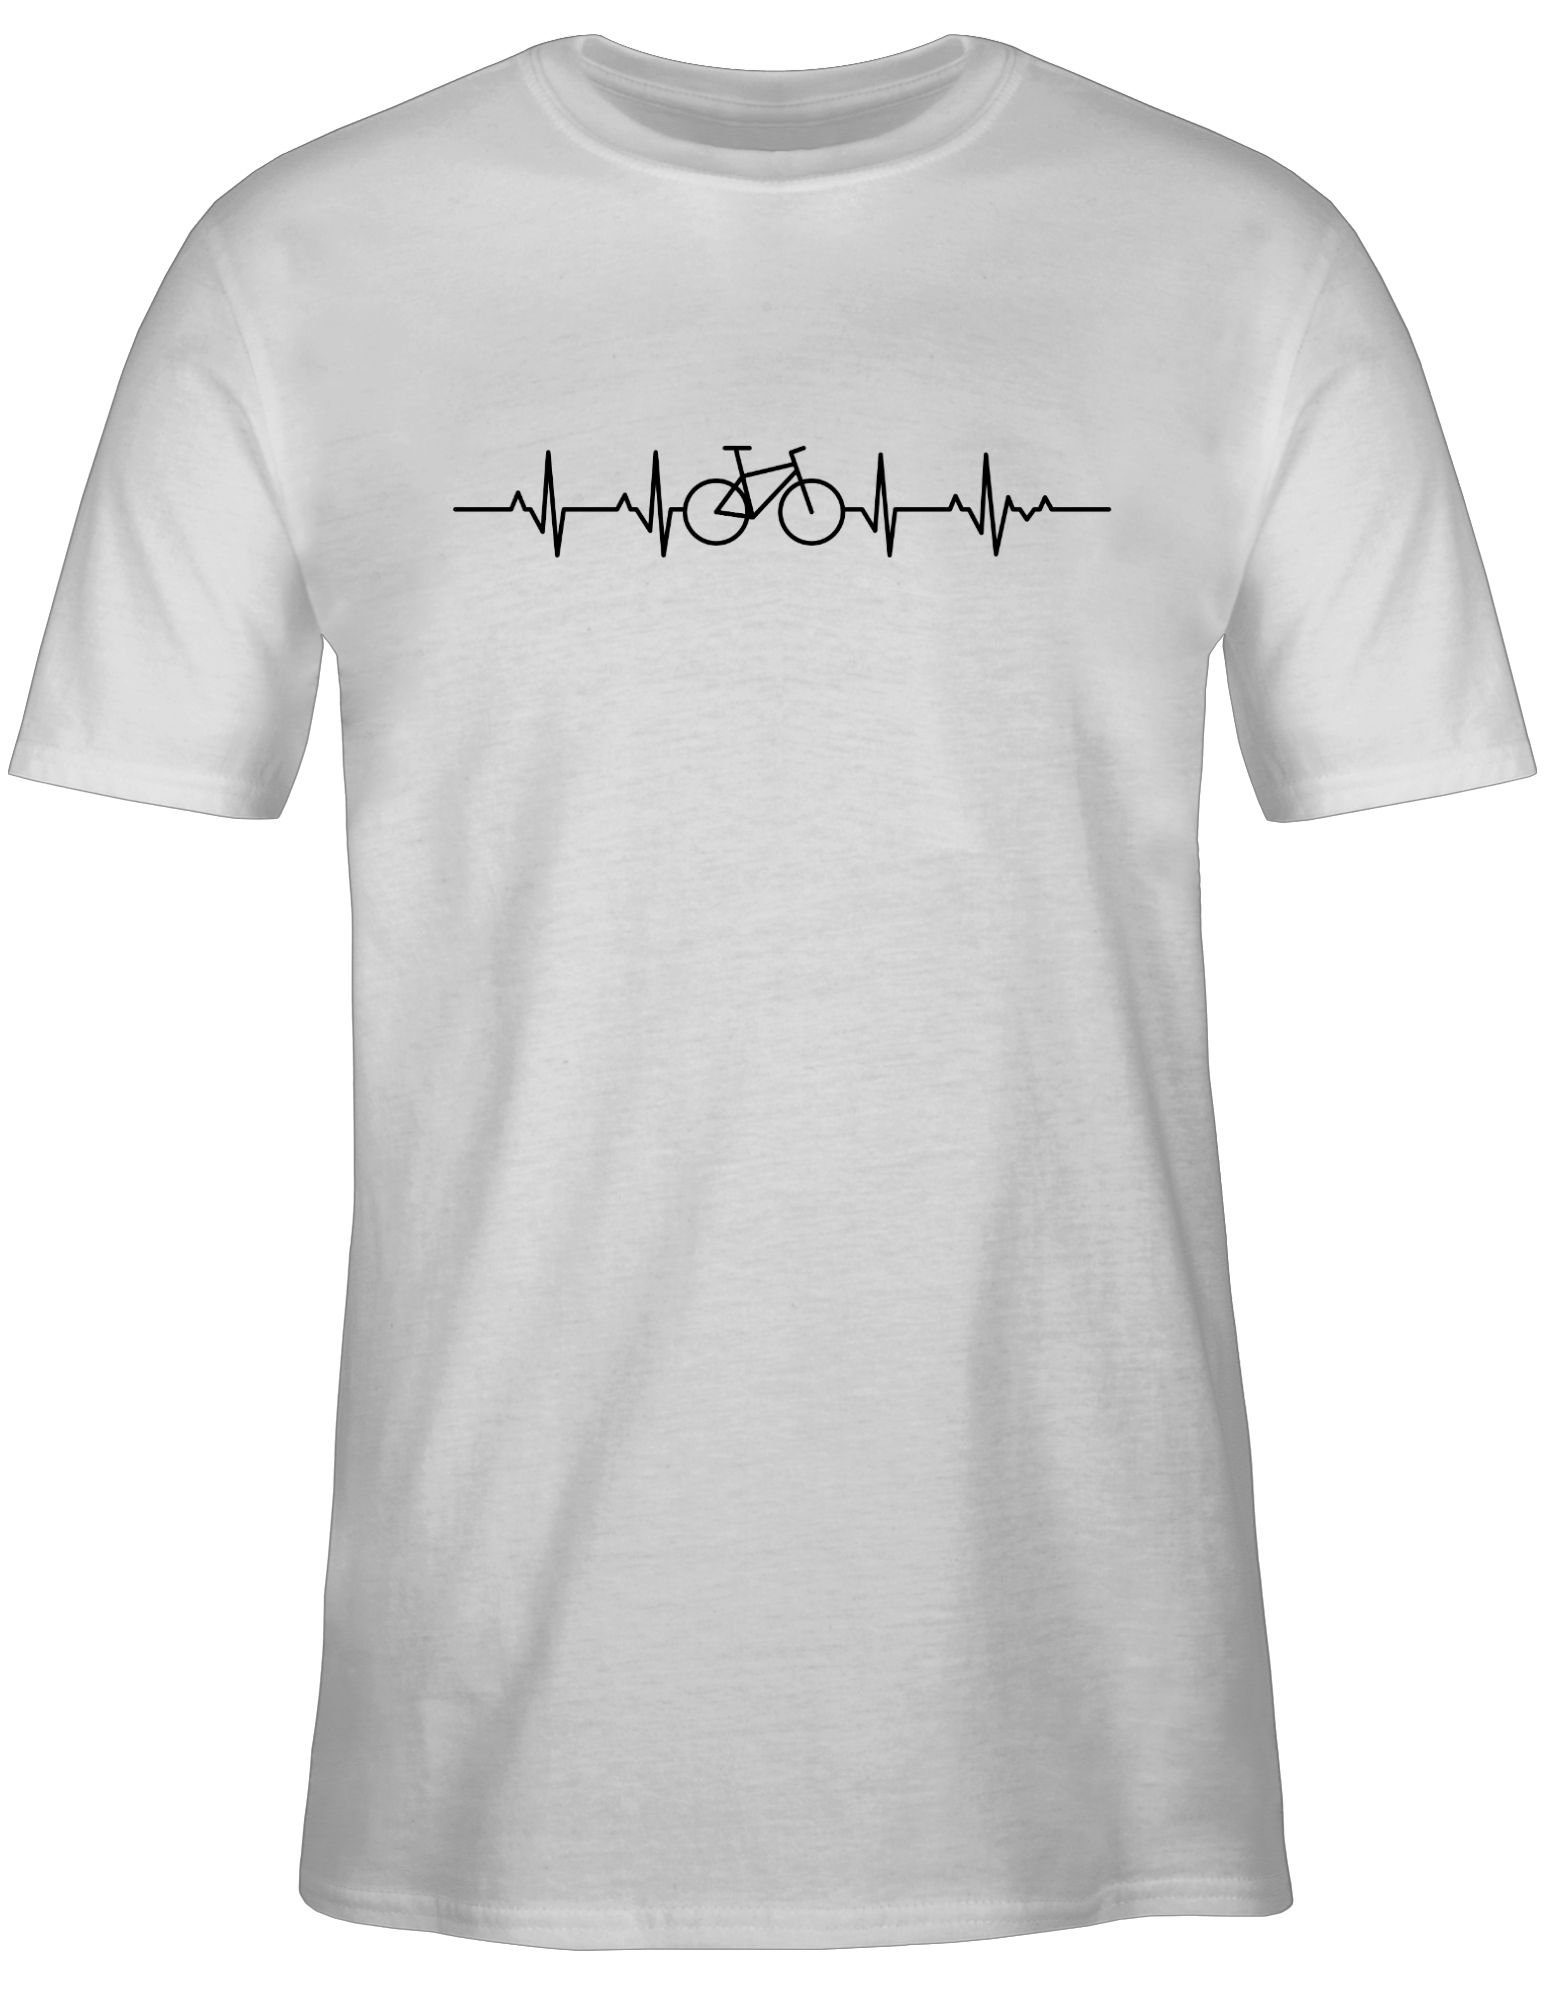 Fahrrad schwarz Weiß Radsport - Fahrrad 2 T-Shirt Herzschlag Shirtracer Bekleidung